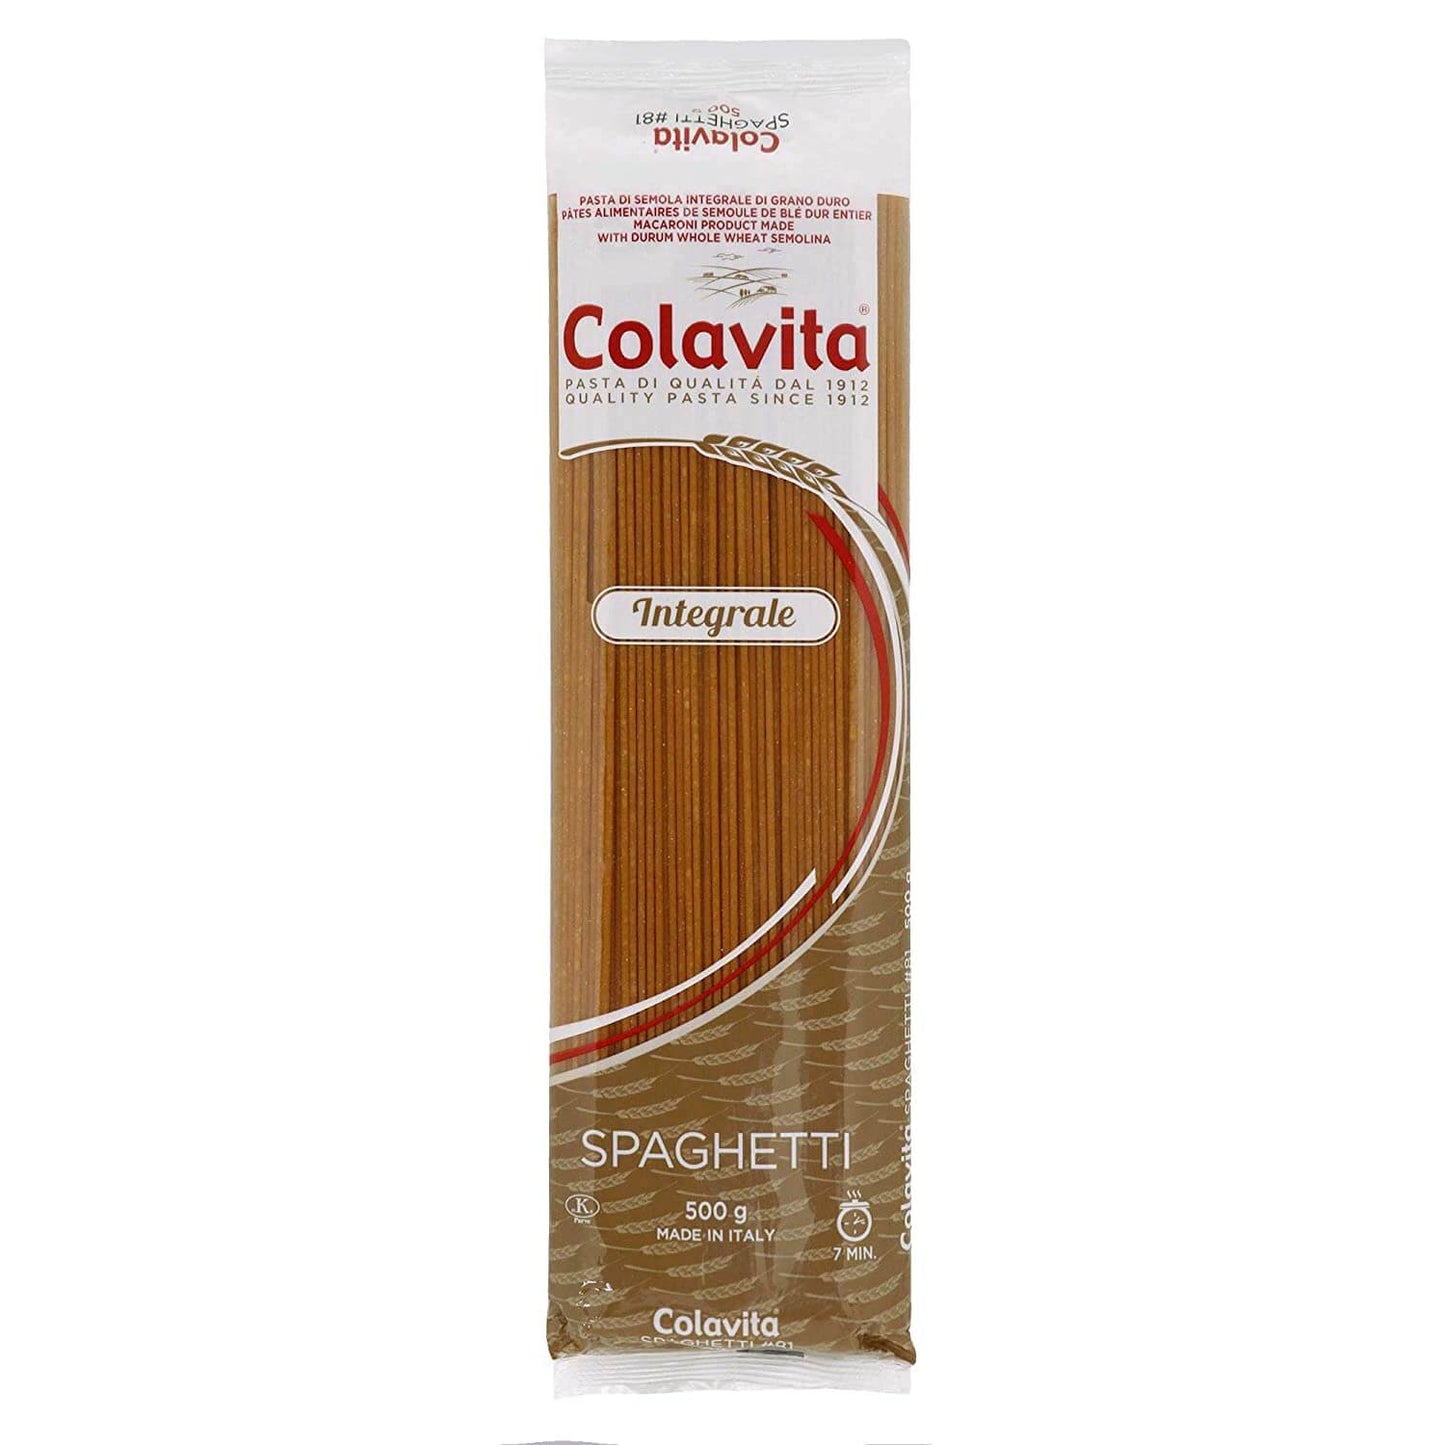 Colavita Spaghetti Whole Wheat Pasta, 500 g